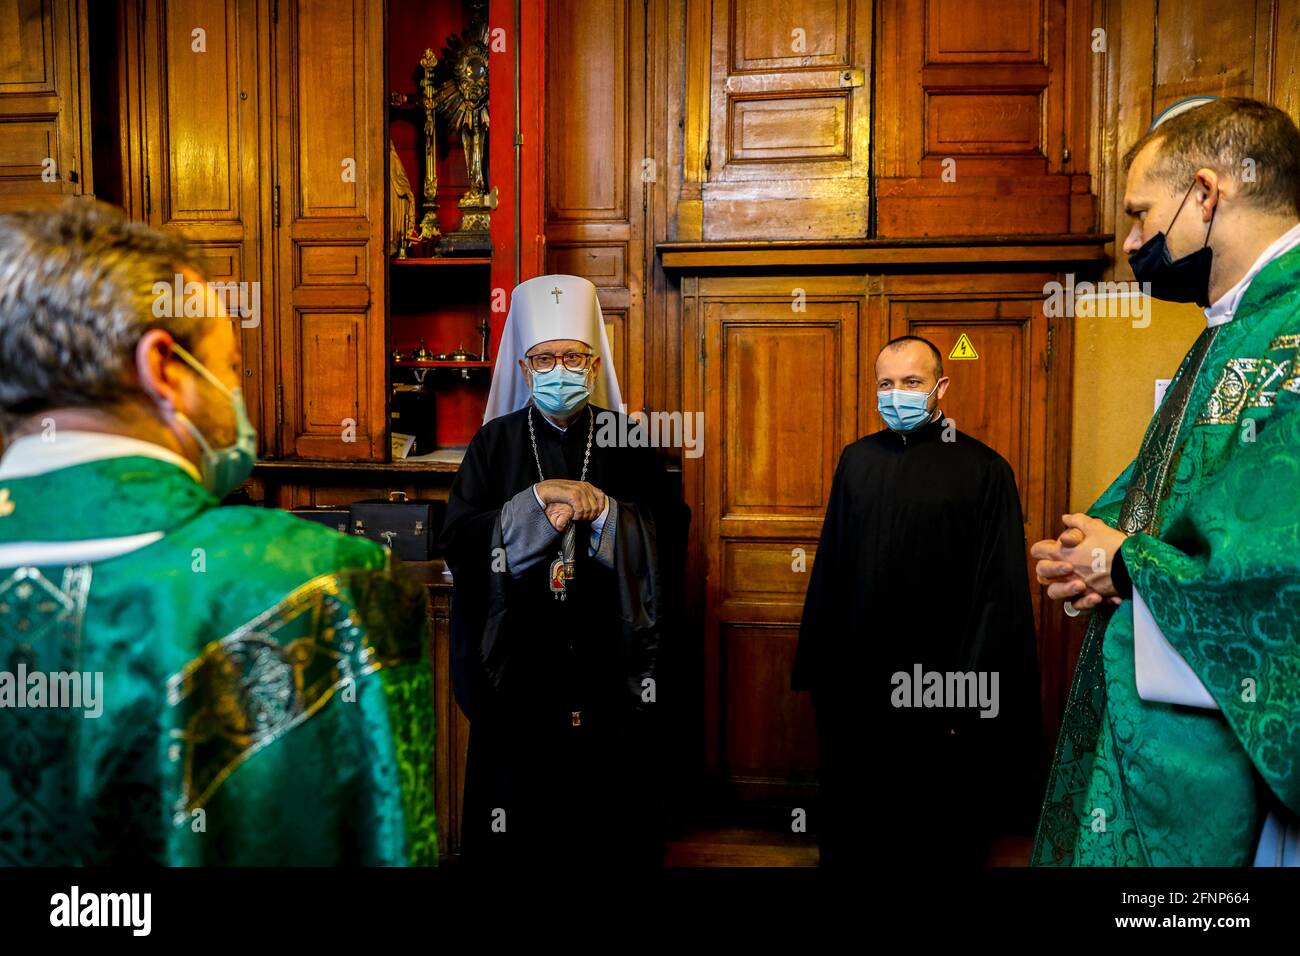 Sacerdoti ortodossi e cattolici e vescovo nella sagrestia della chiesa cattolica di Saint-Philippe-du-Roule, parigi, Francia Foto Stock